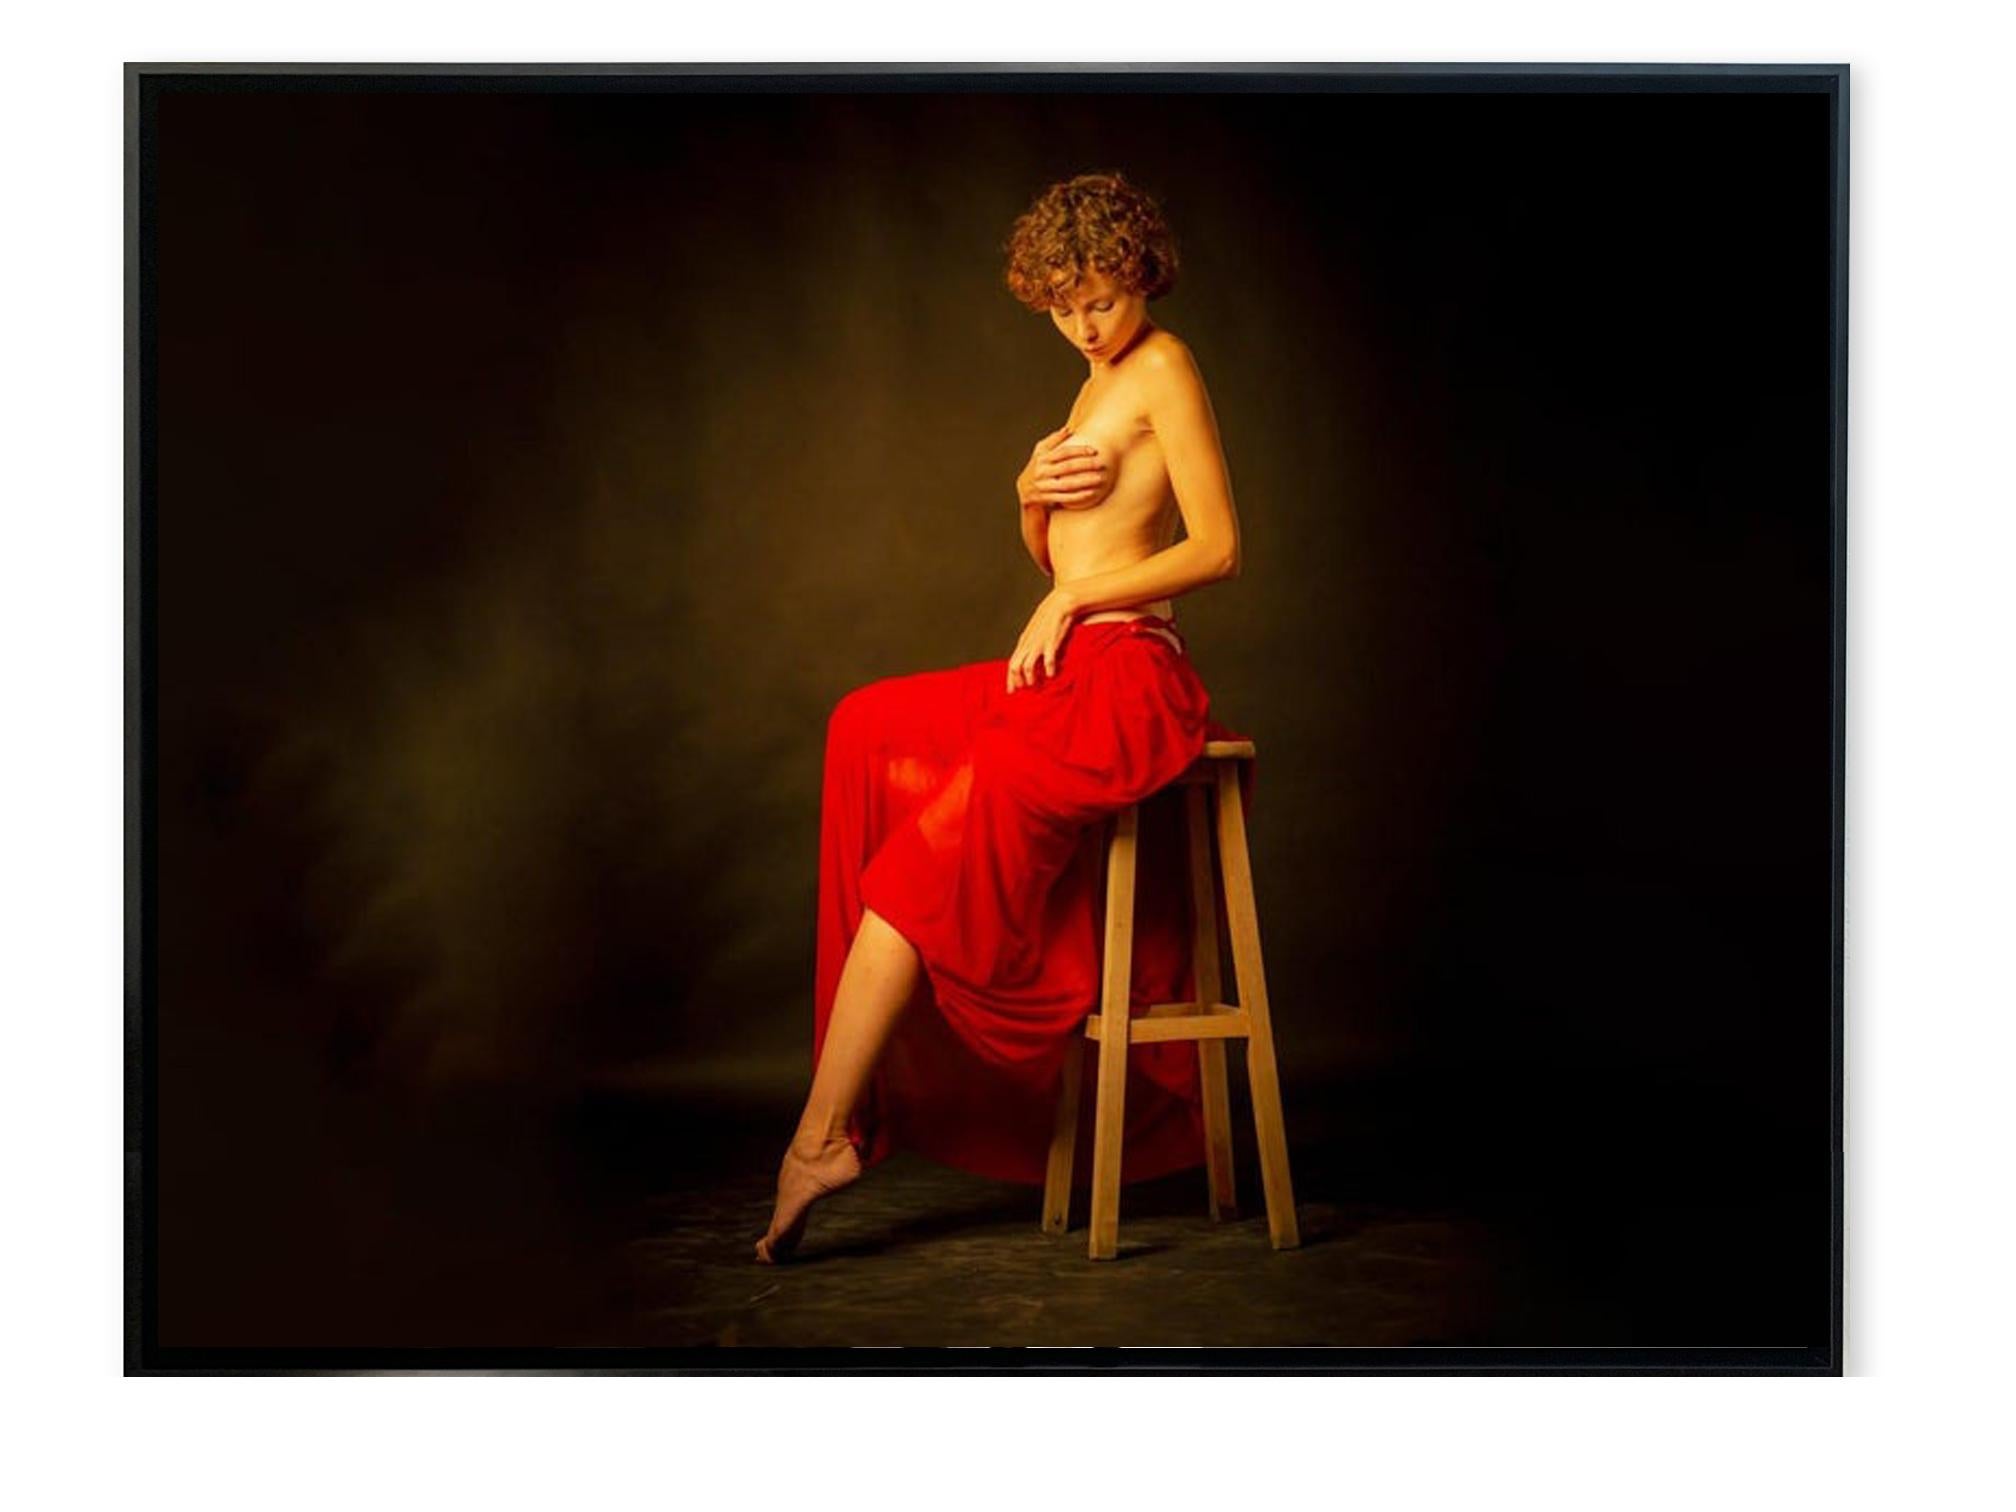 Grande photographie figurative colorée d'une femme assise - Modèle nu féminin  Par Shuki - Contemporain Photograph par Shuki Laufer